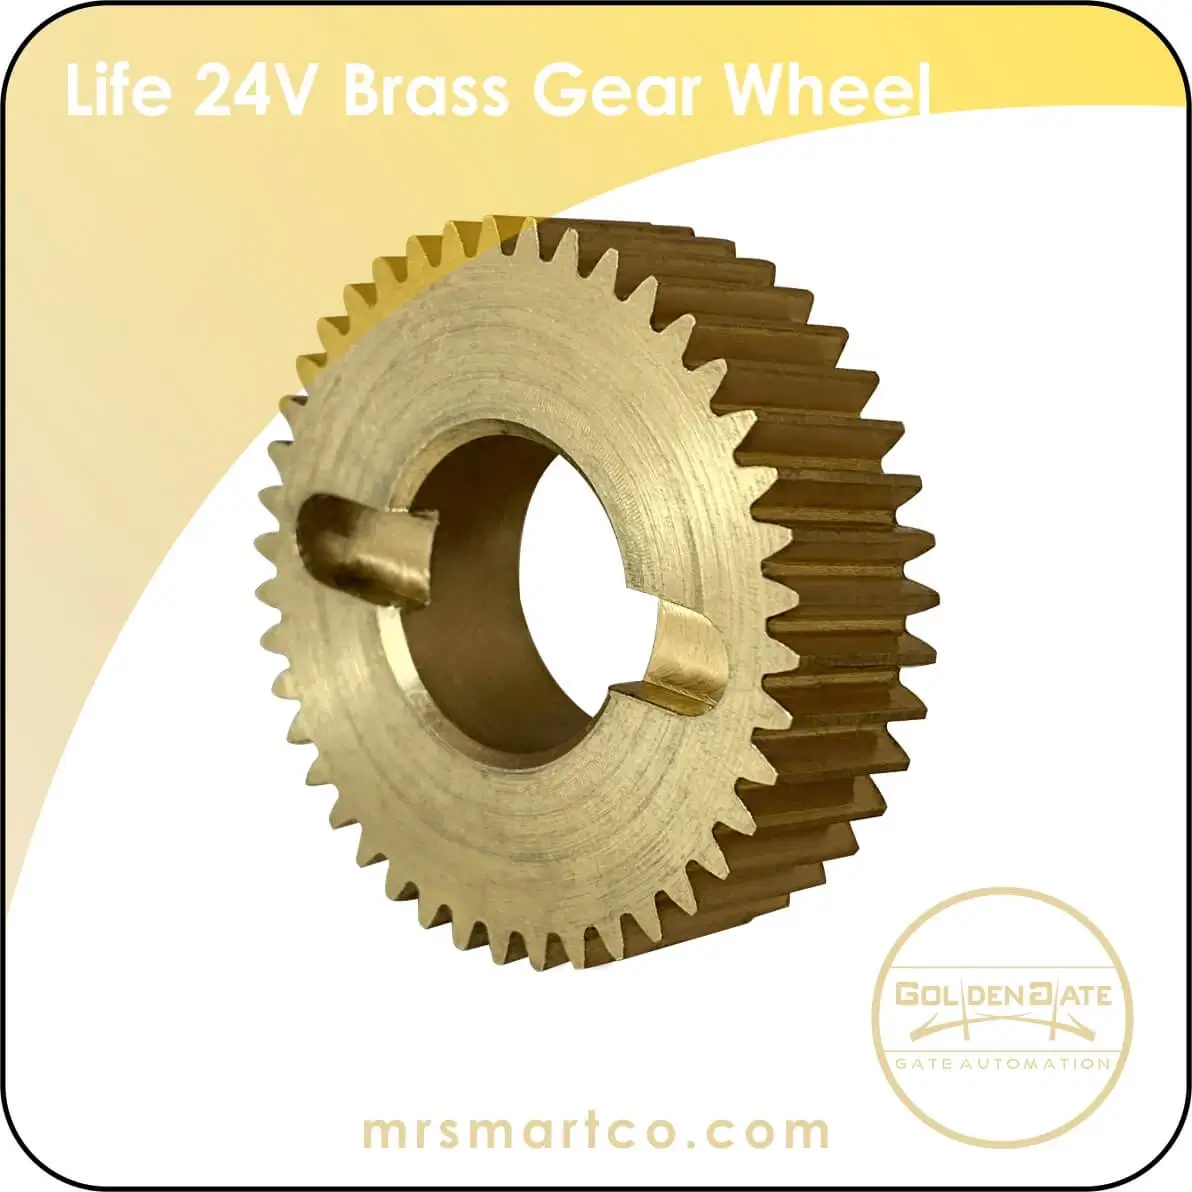 Life 24V brass gear wheel